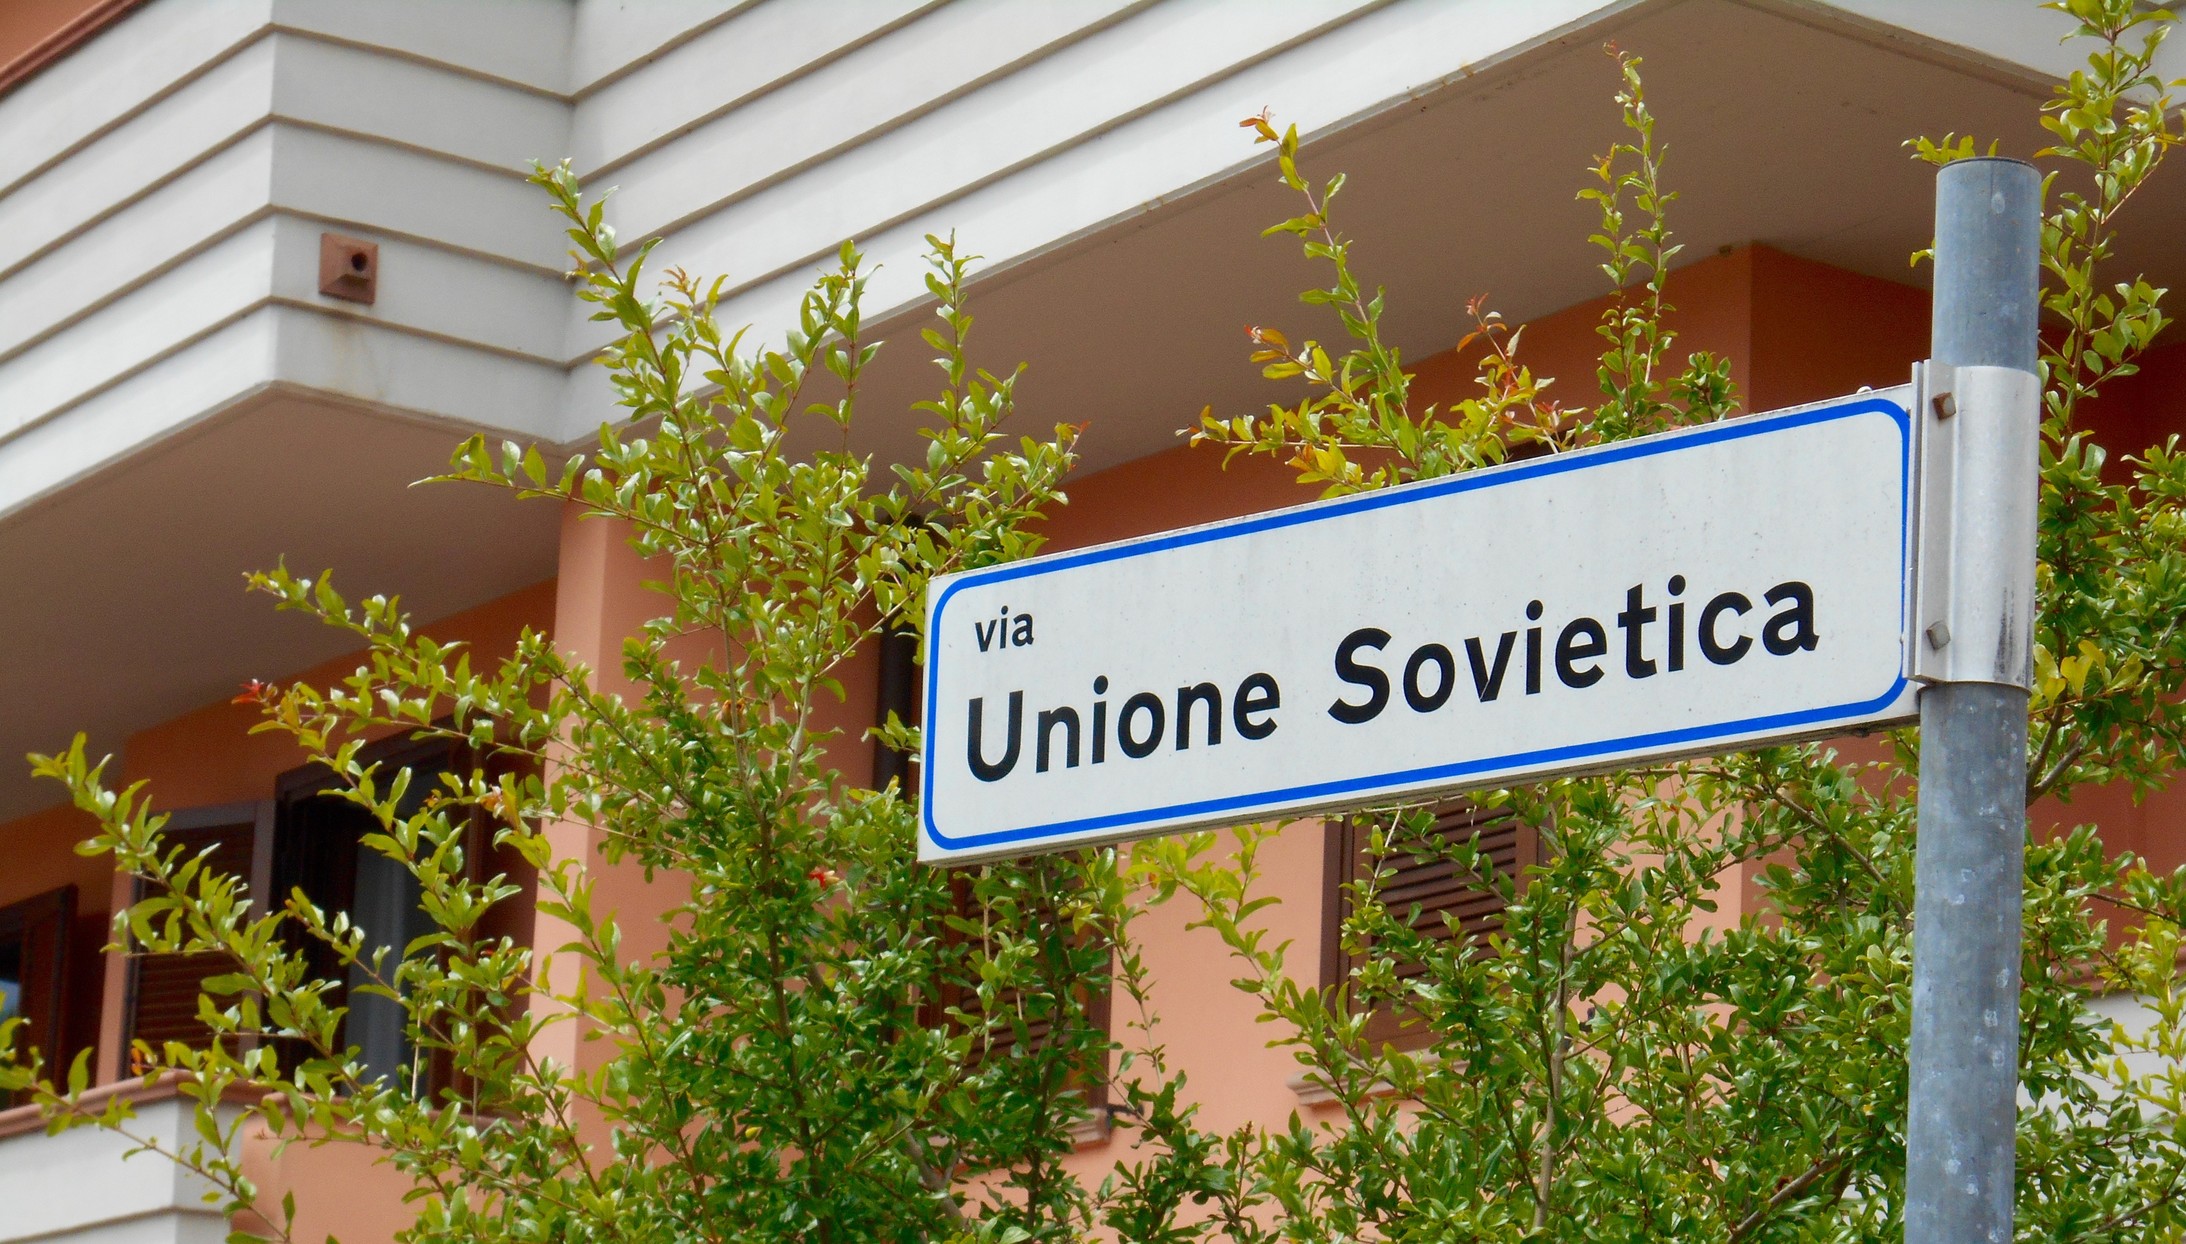 Die Via Unione Sovietica in Magione, Umbrien (Foto: J21)